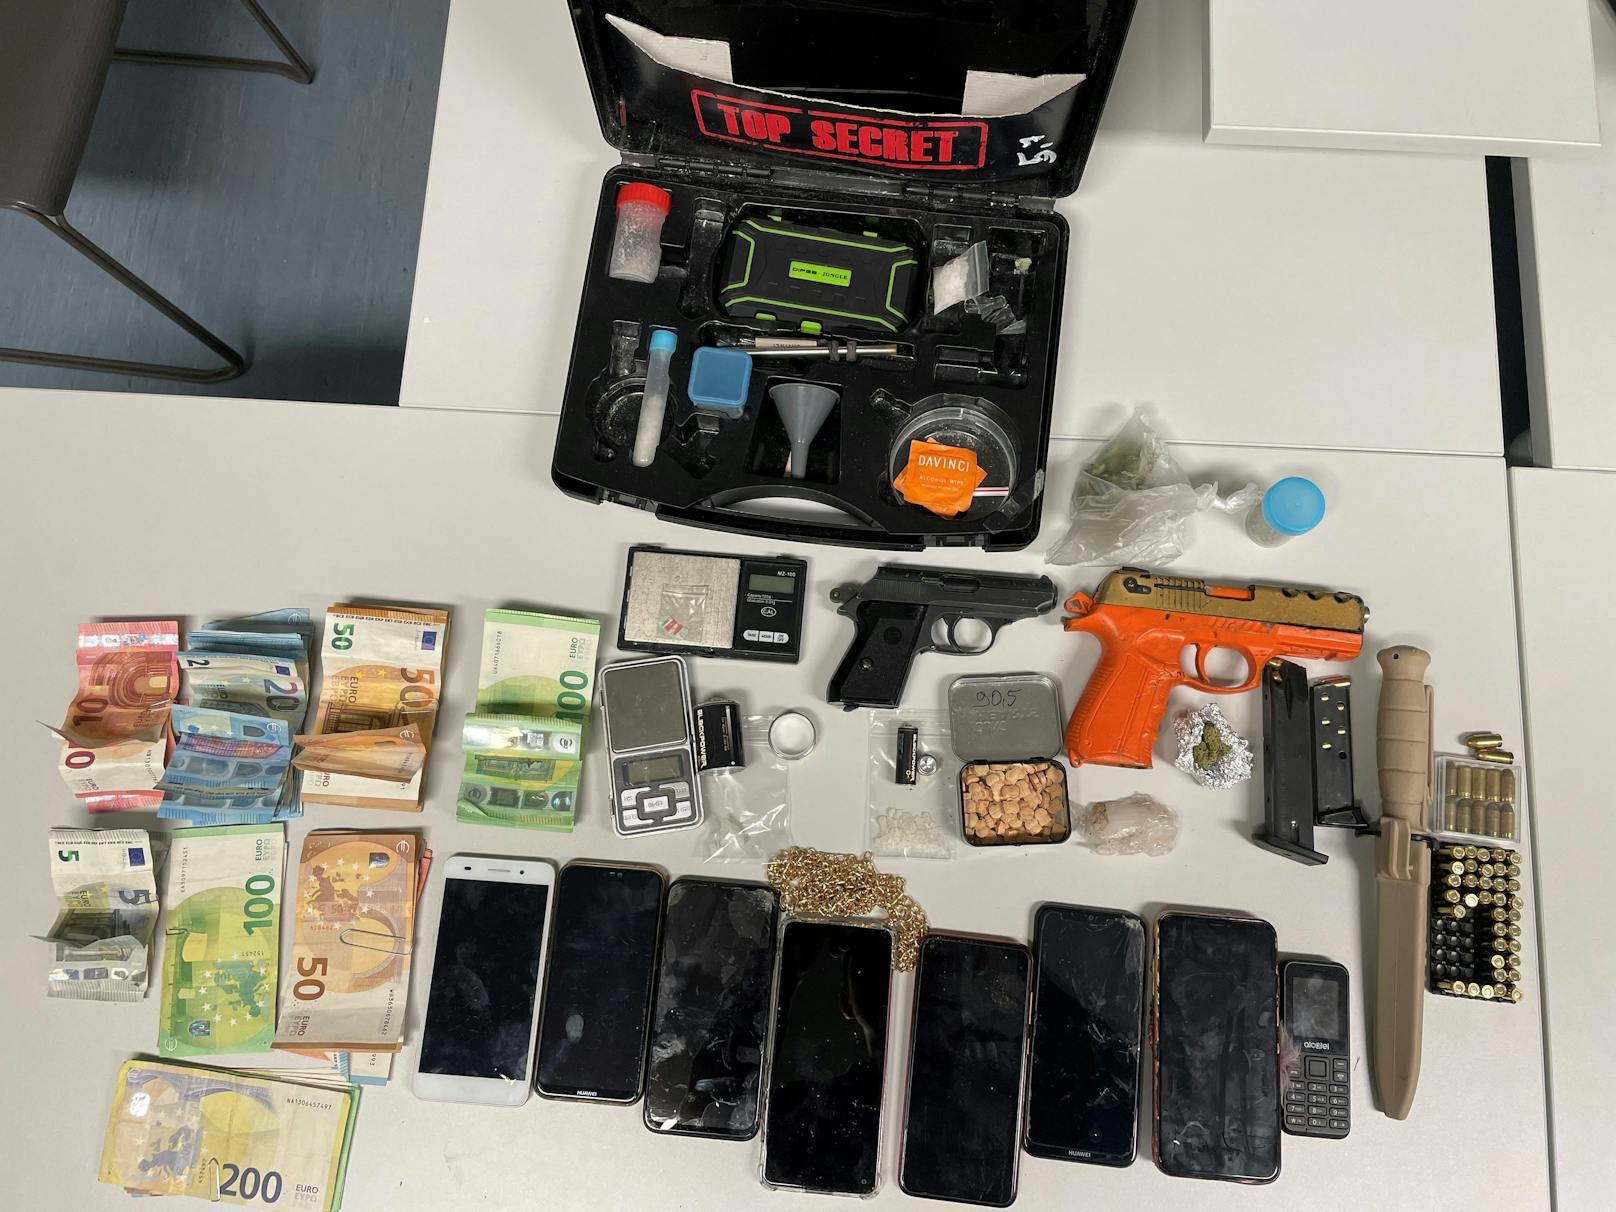 Drogen und Waffen in Wohnung: Polizei nimmt Dealer fest